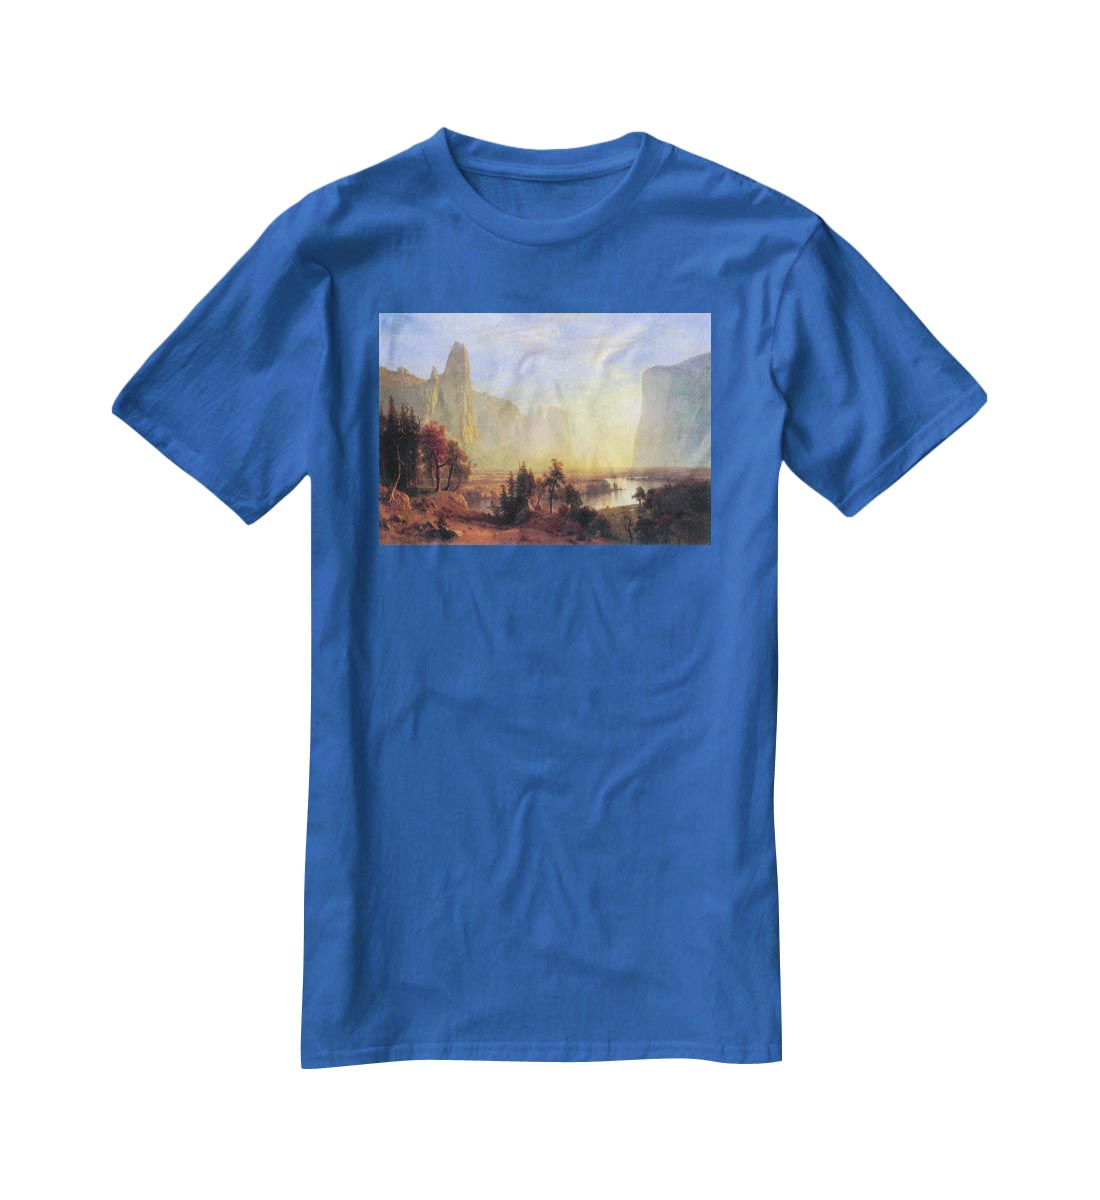 Yosemite Valley by Bierstadt T-Shirt - Canvas Art Rocks - 2